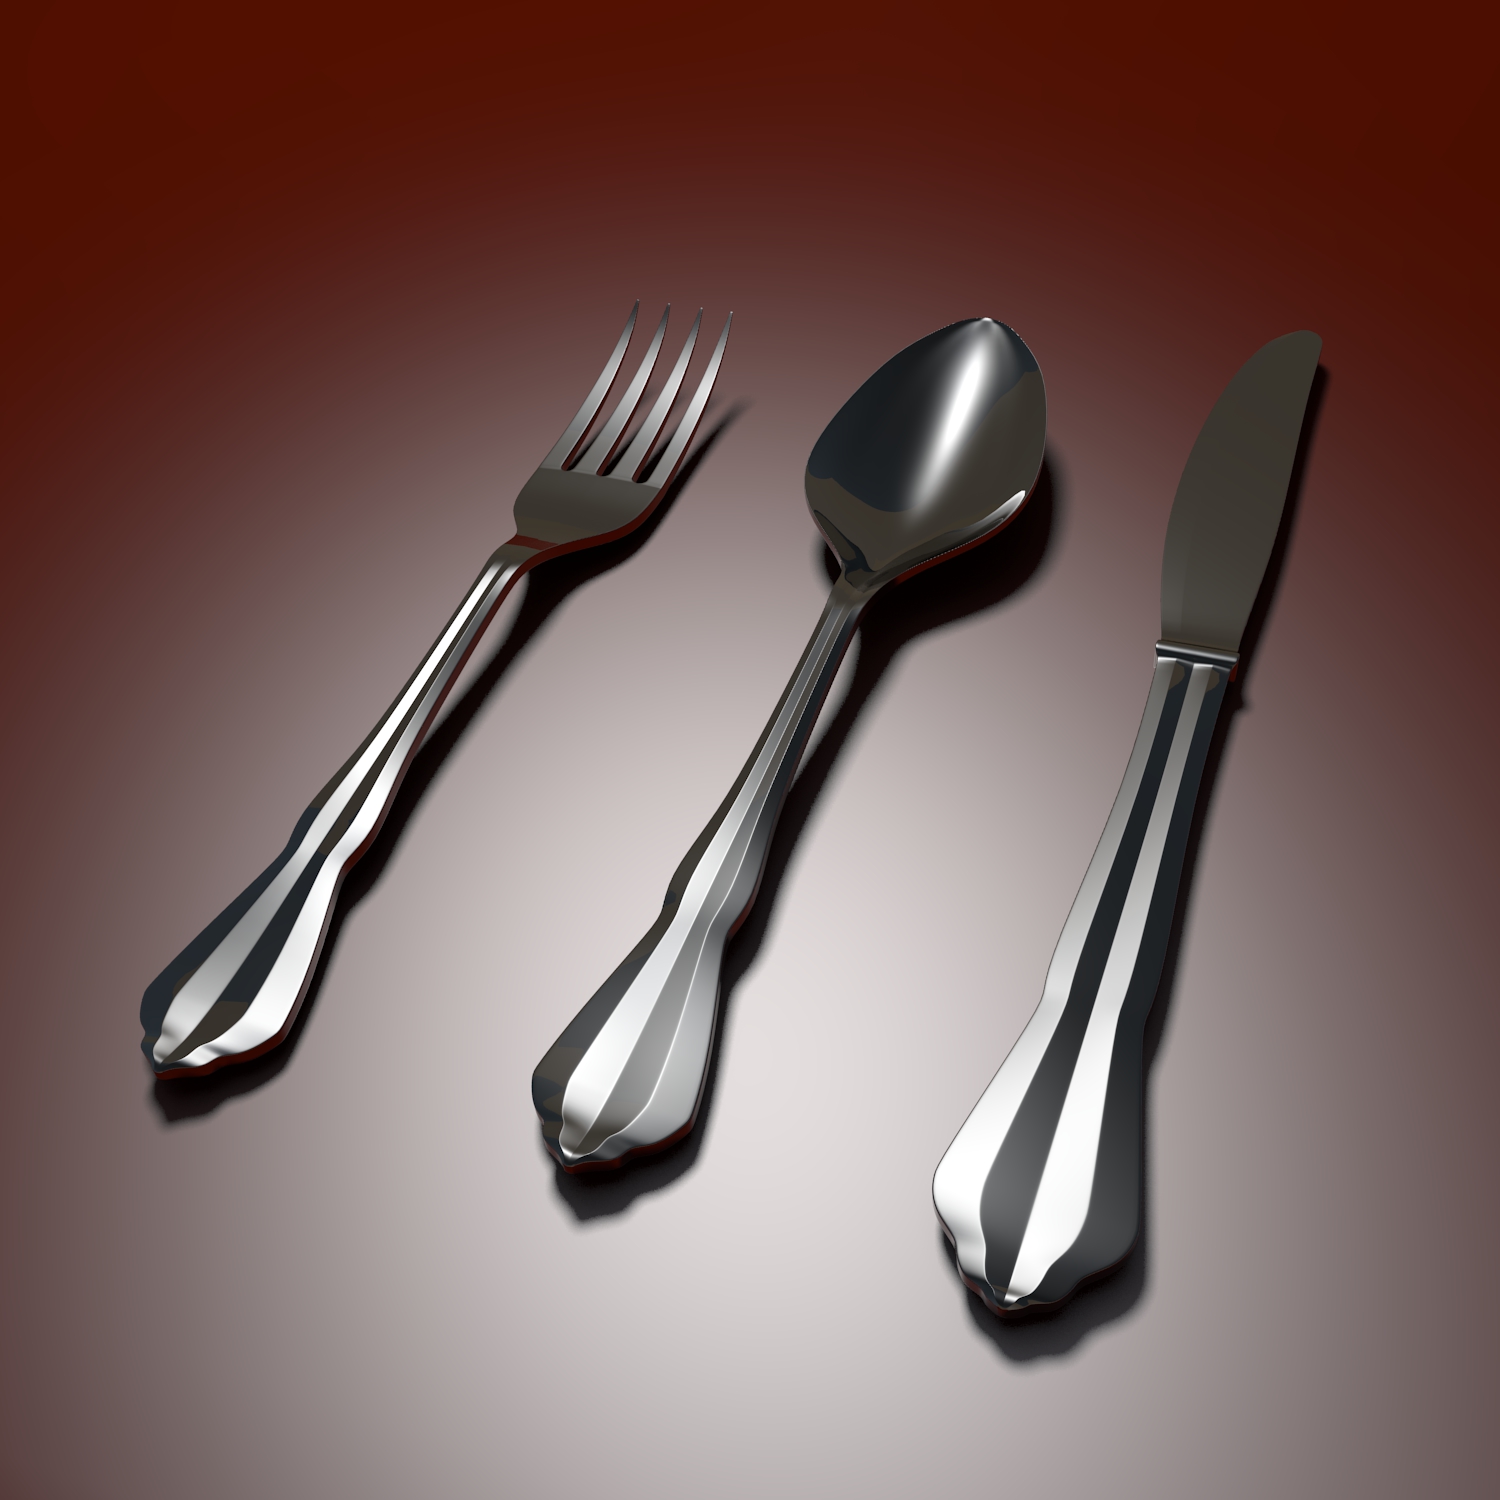 tableware spoon fork knife 3d model blend obj 116252